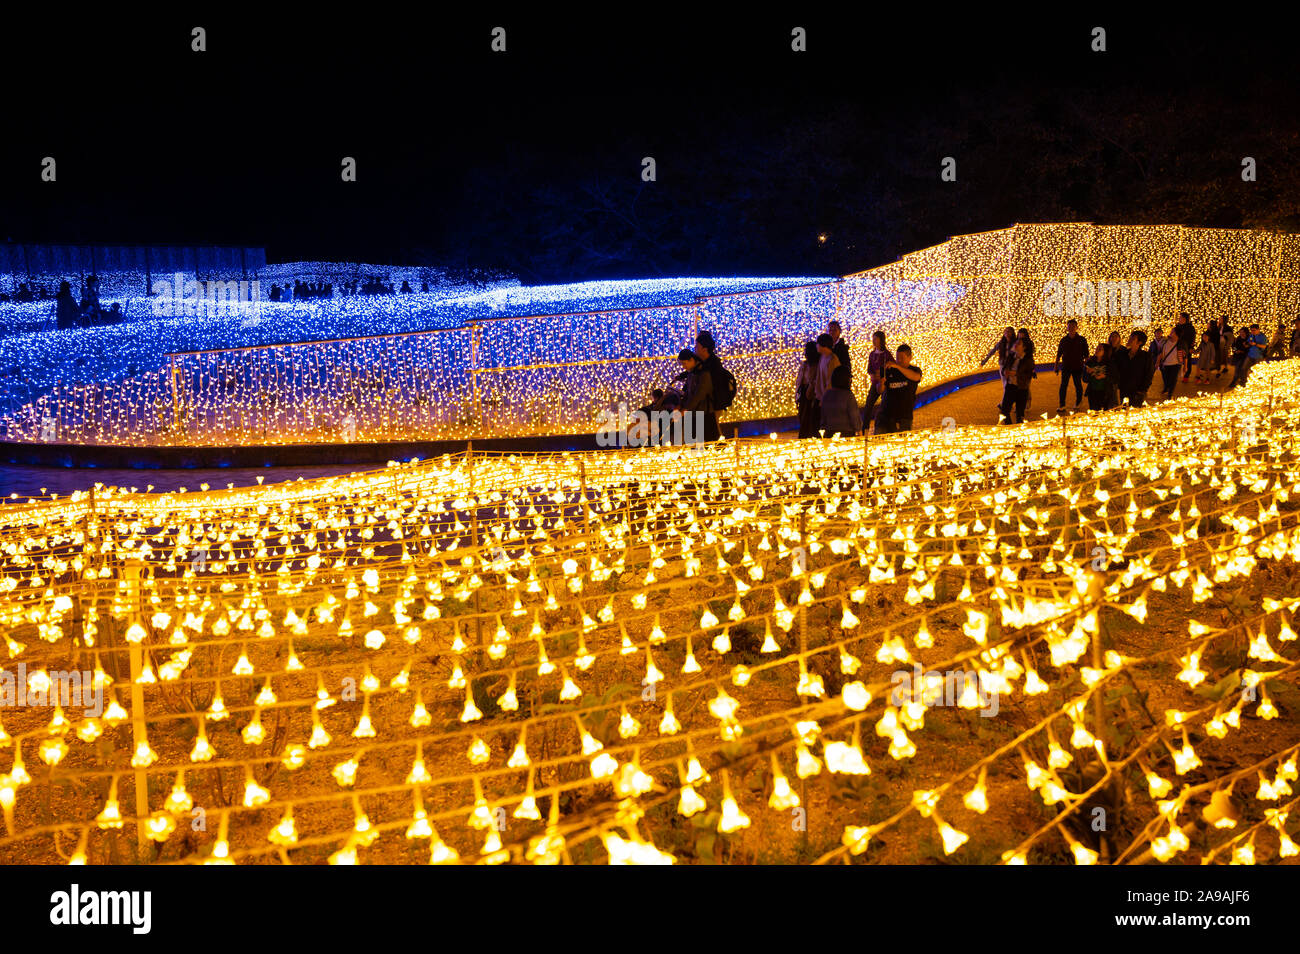 La gente camminare attraverso i campi di spie LED conformata come petali. Foto Stock